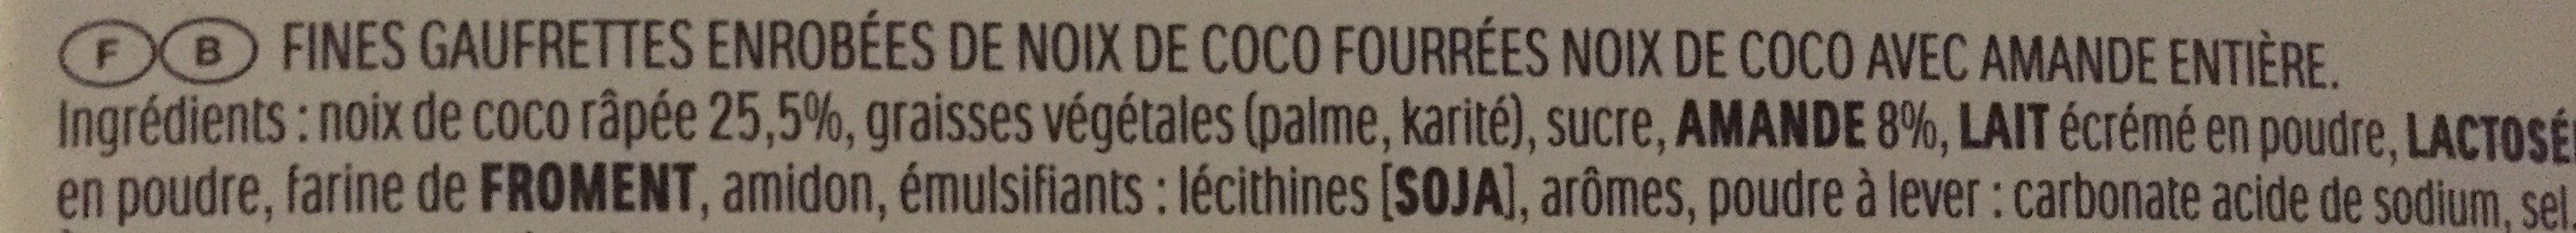 Raffaello fines gaufrettes enrobees de noix de coco fourrees noix de coco avec amande entiere ballotin de 18 pieces - Ingrédients